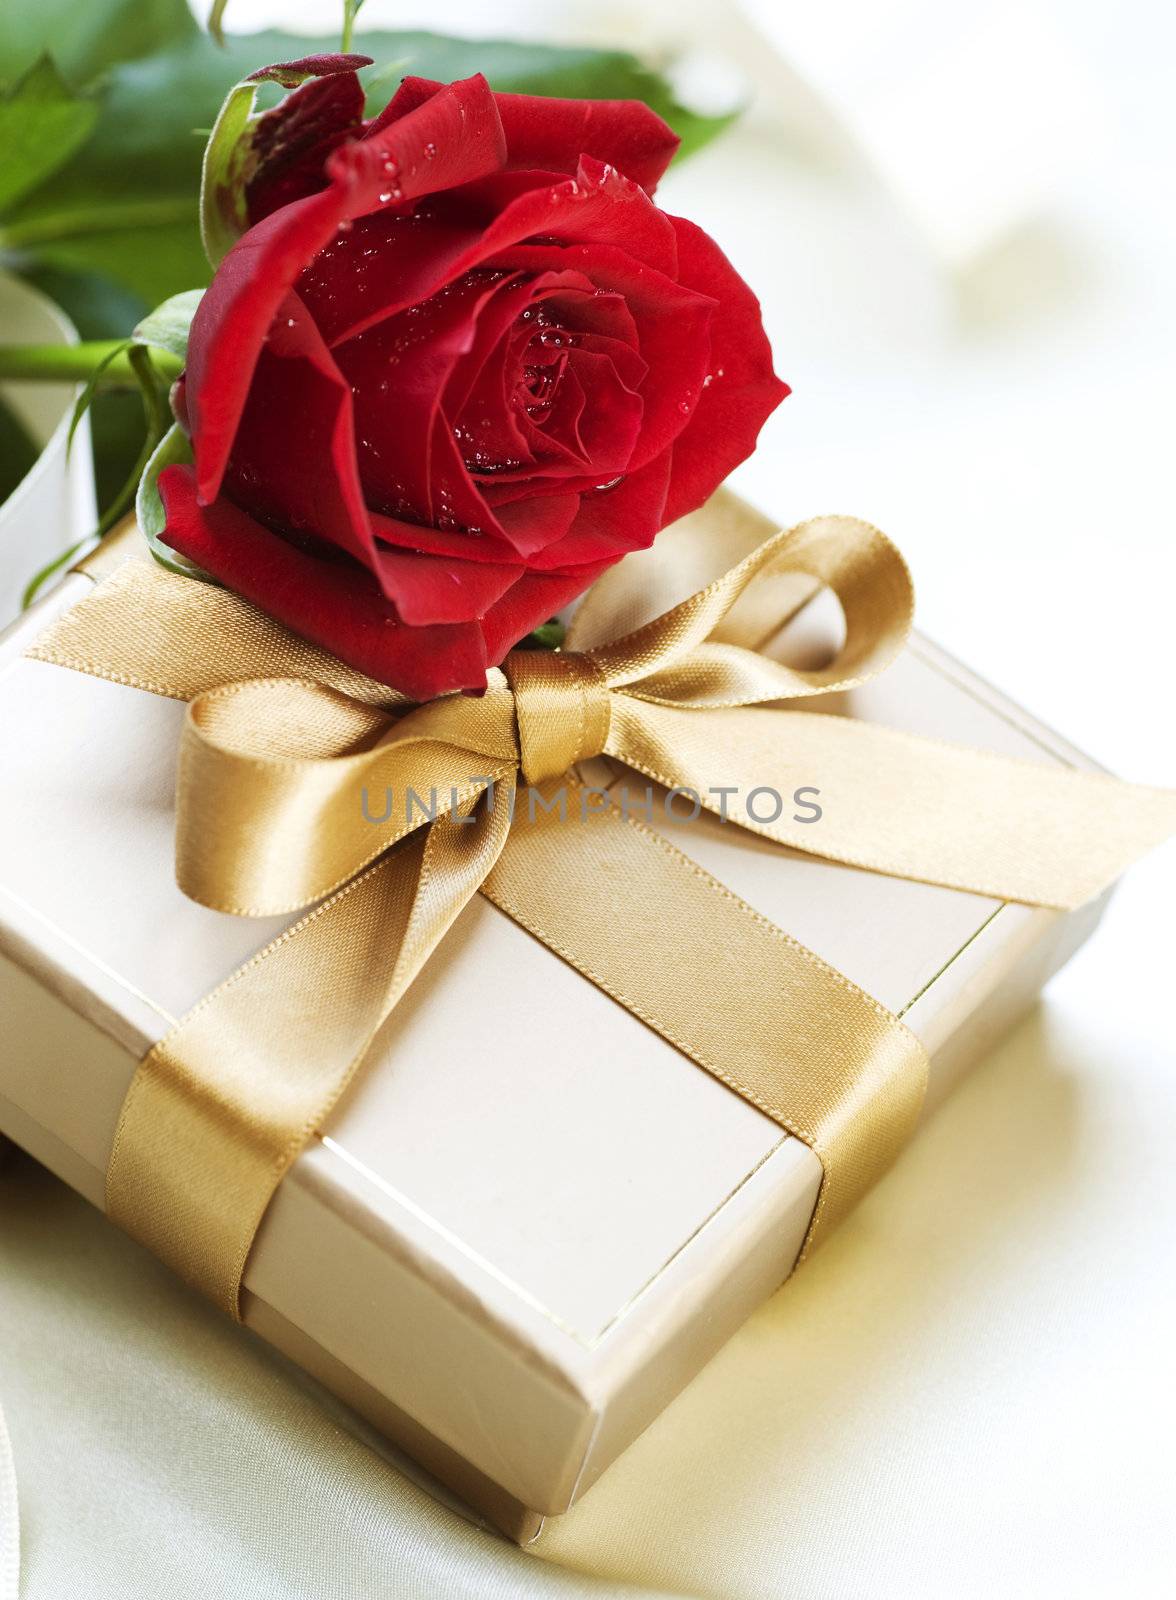 Romantic Gift by SubbotinaA